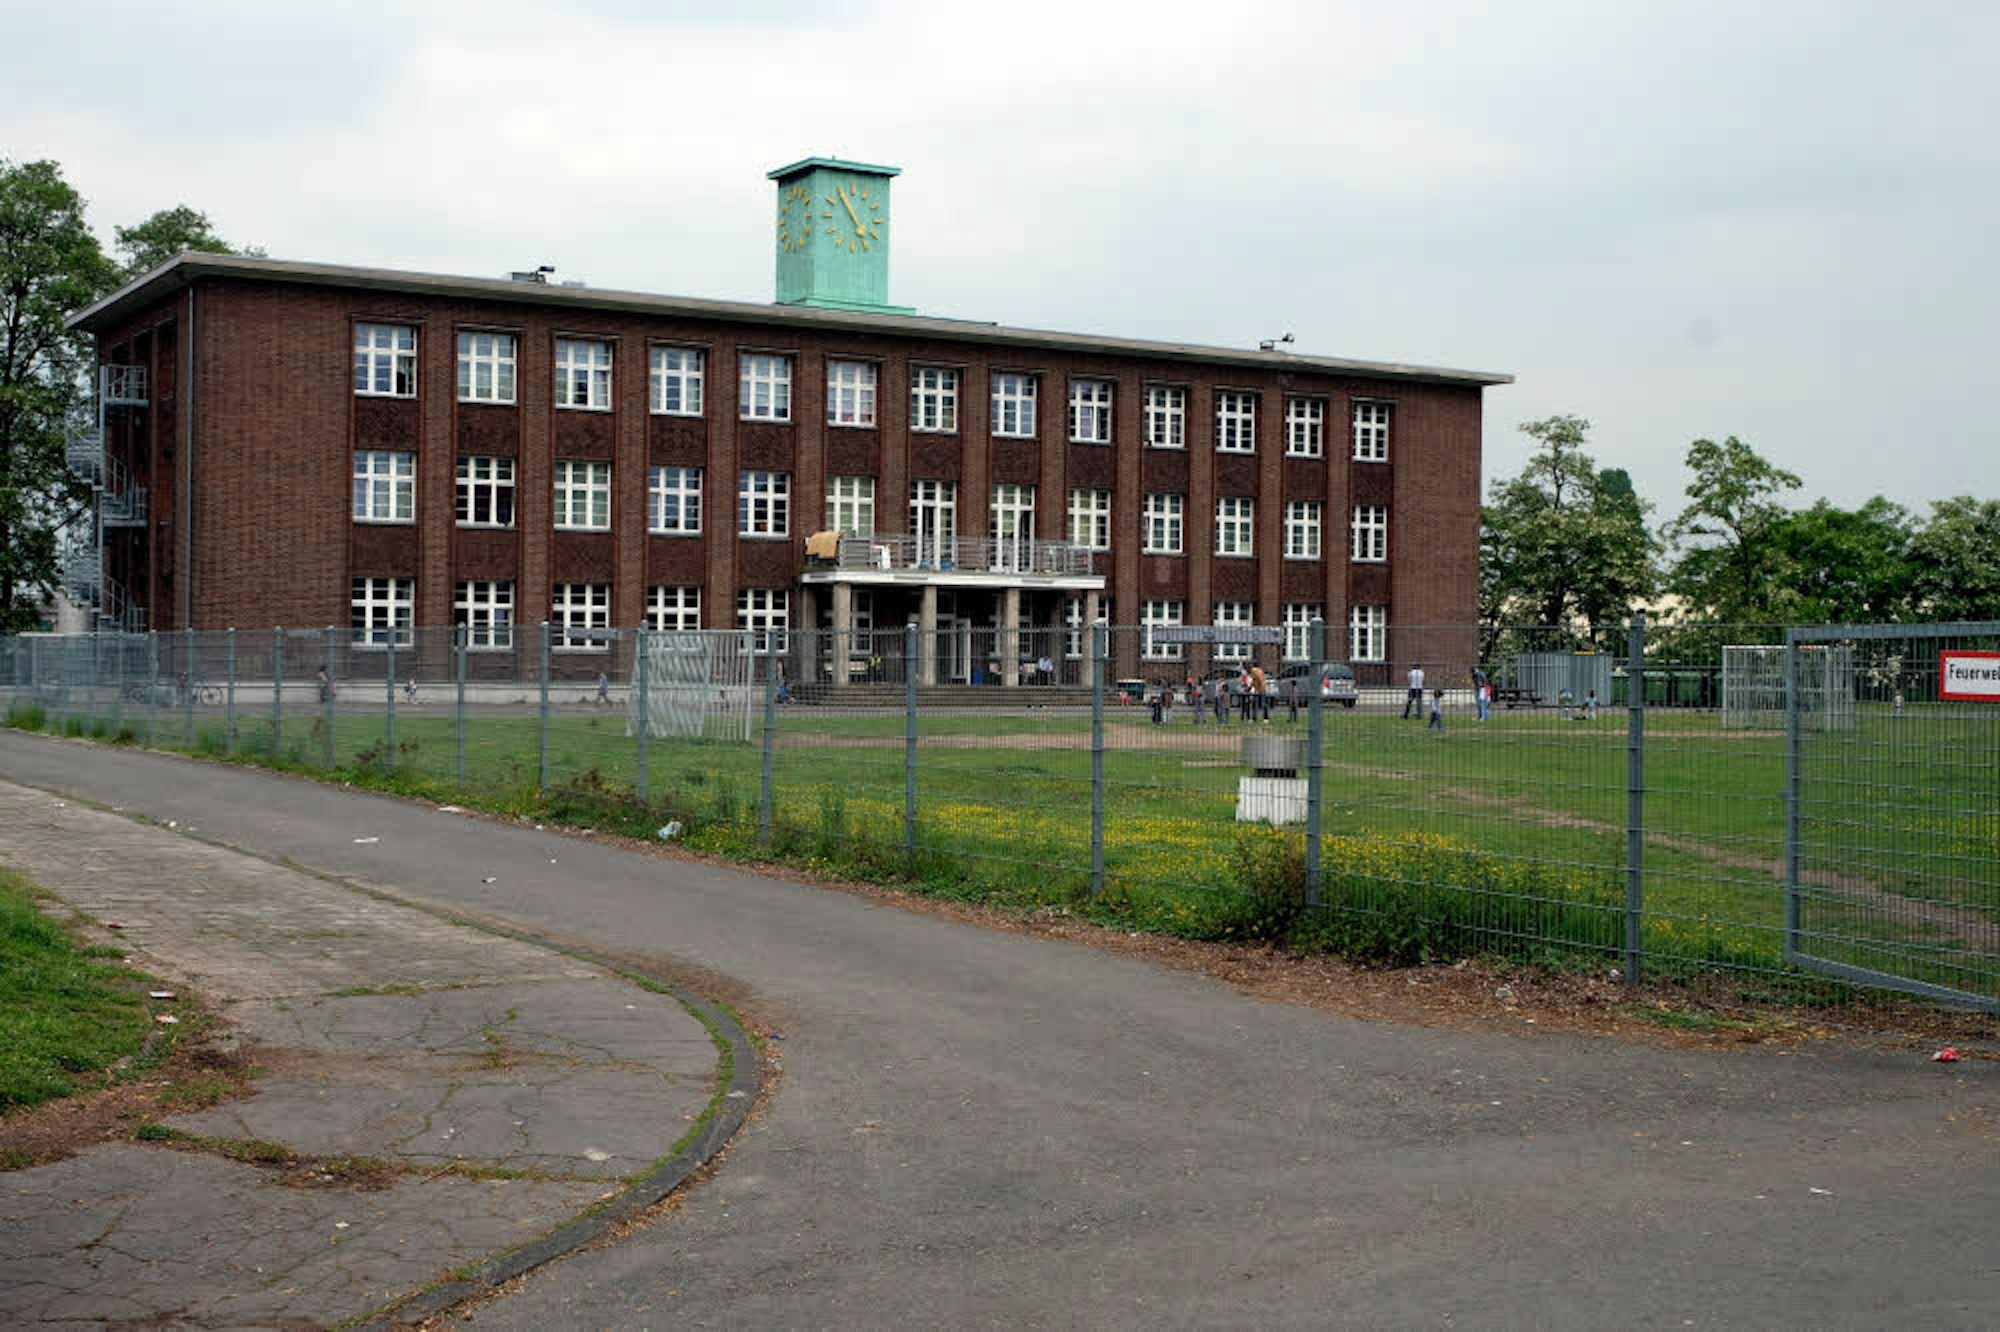 Das ehemalige Verwaltungsgebäude an der Neusser Landstraße wird zurzeit als Flüchtlingsunterkunft genutzt.